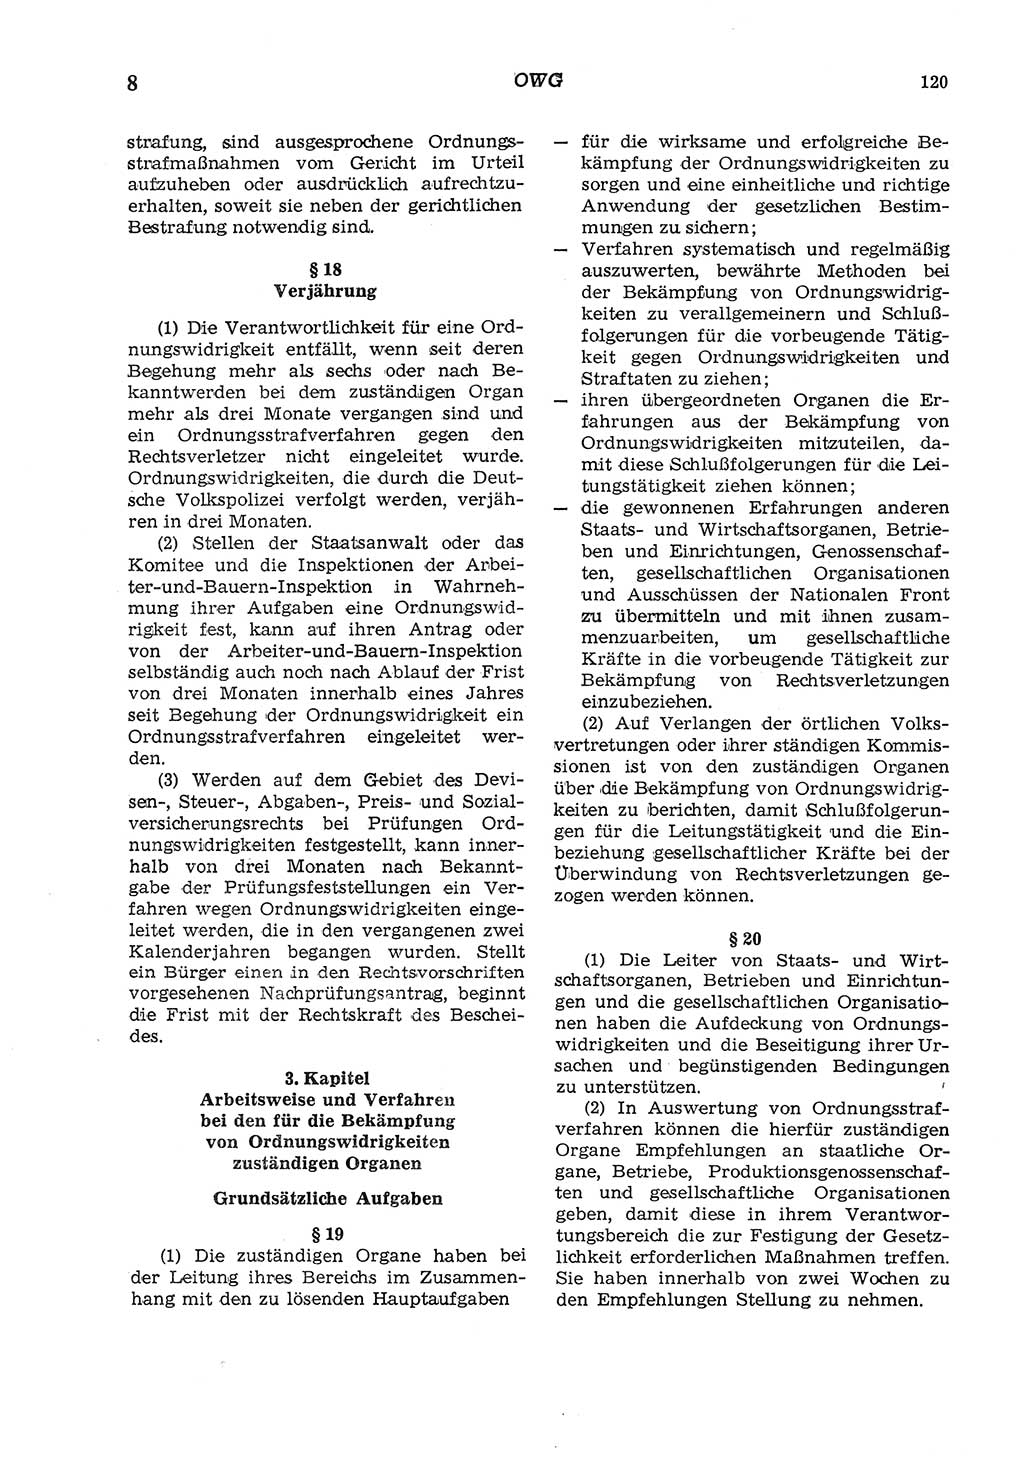 Strafgesetzbuch (StGB) der Deutschen Demokratischen Republik (DDR) und angrenzende Gesetze und Bestimmungen 1975, Seite 120 (StGB DDR Ges. Best. 1975, S. 120)